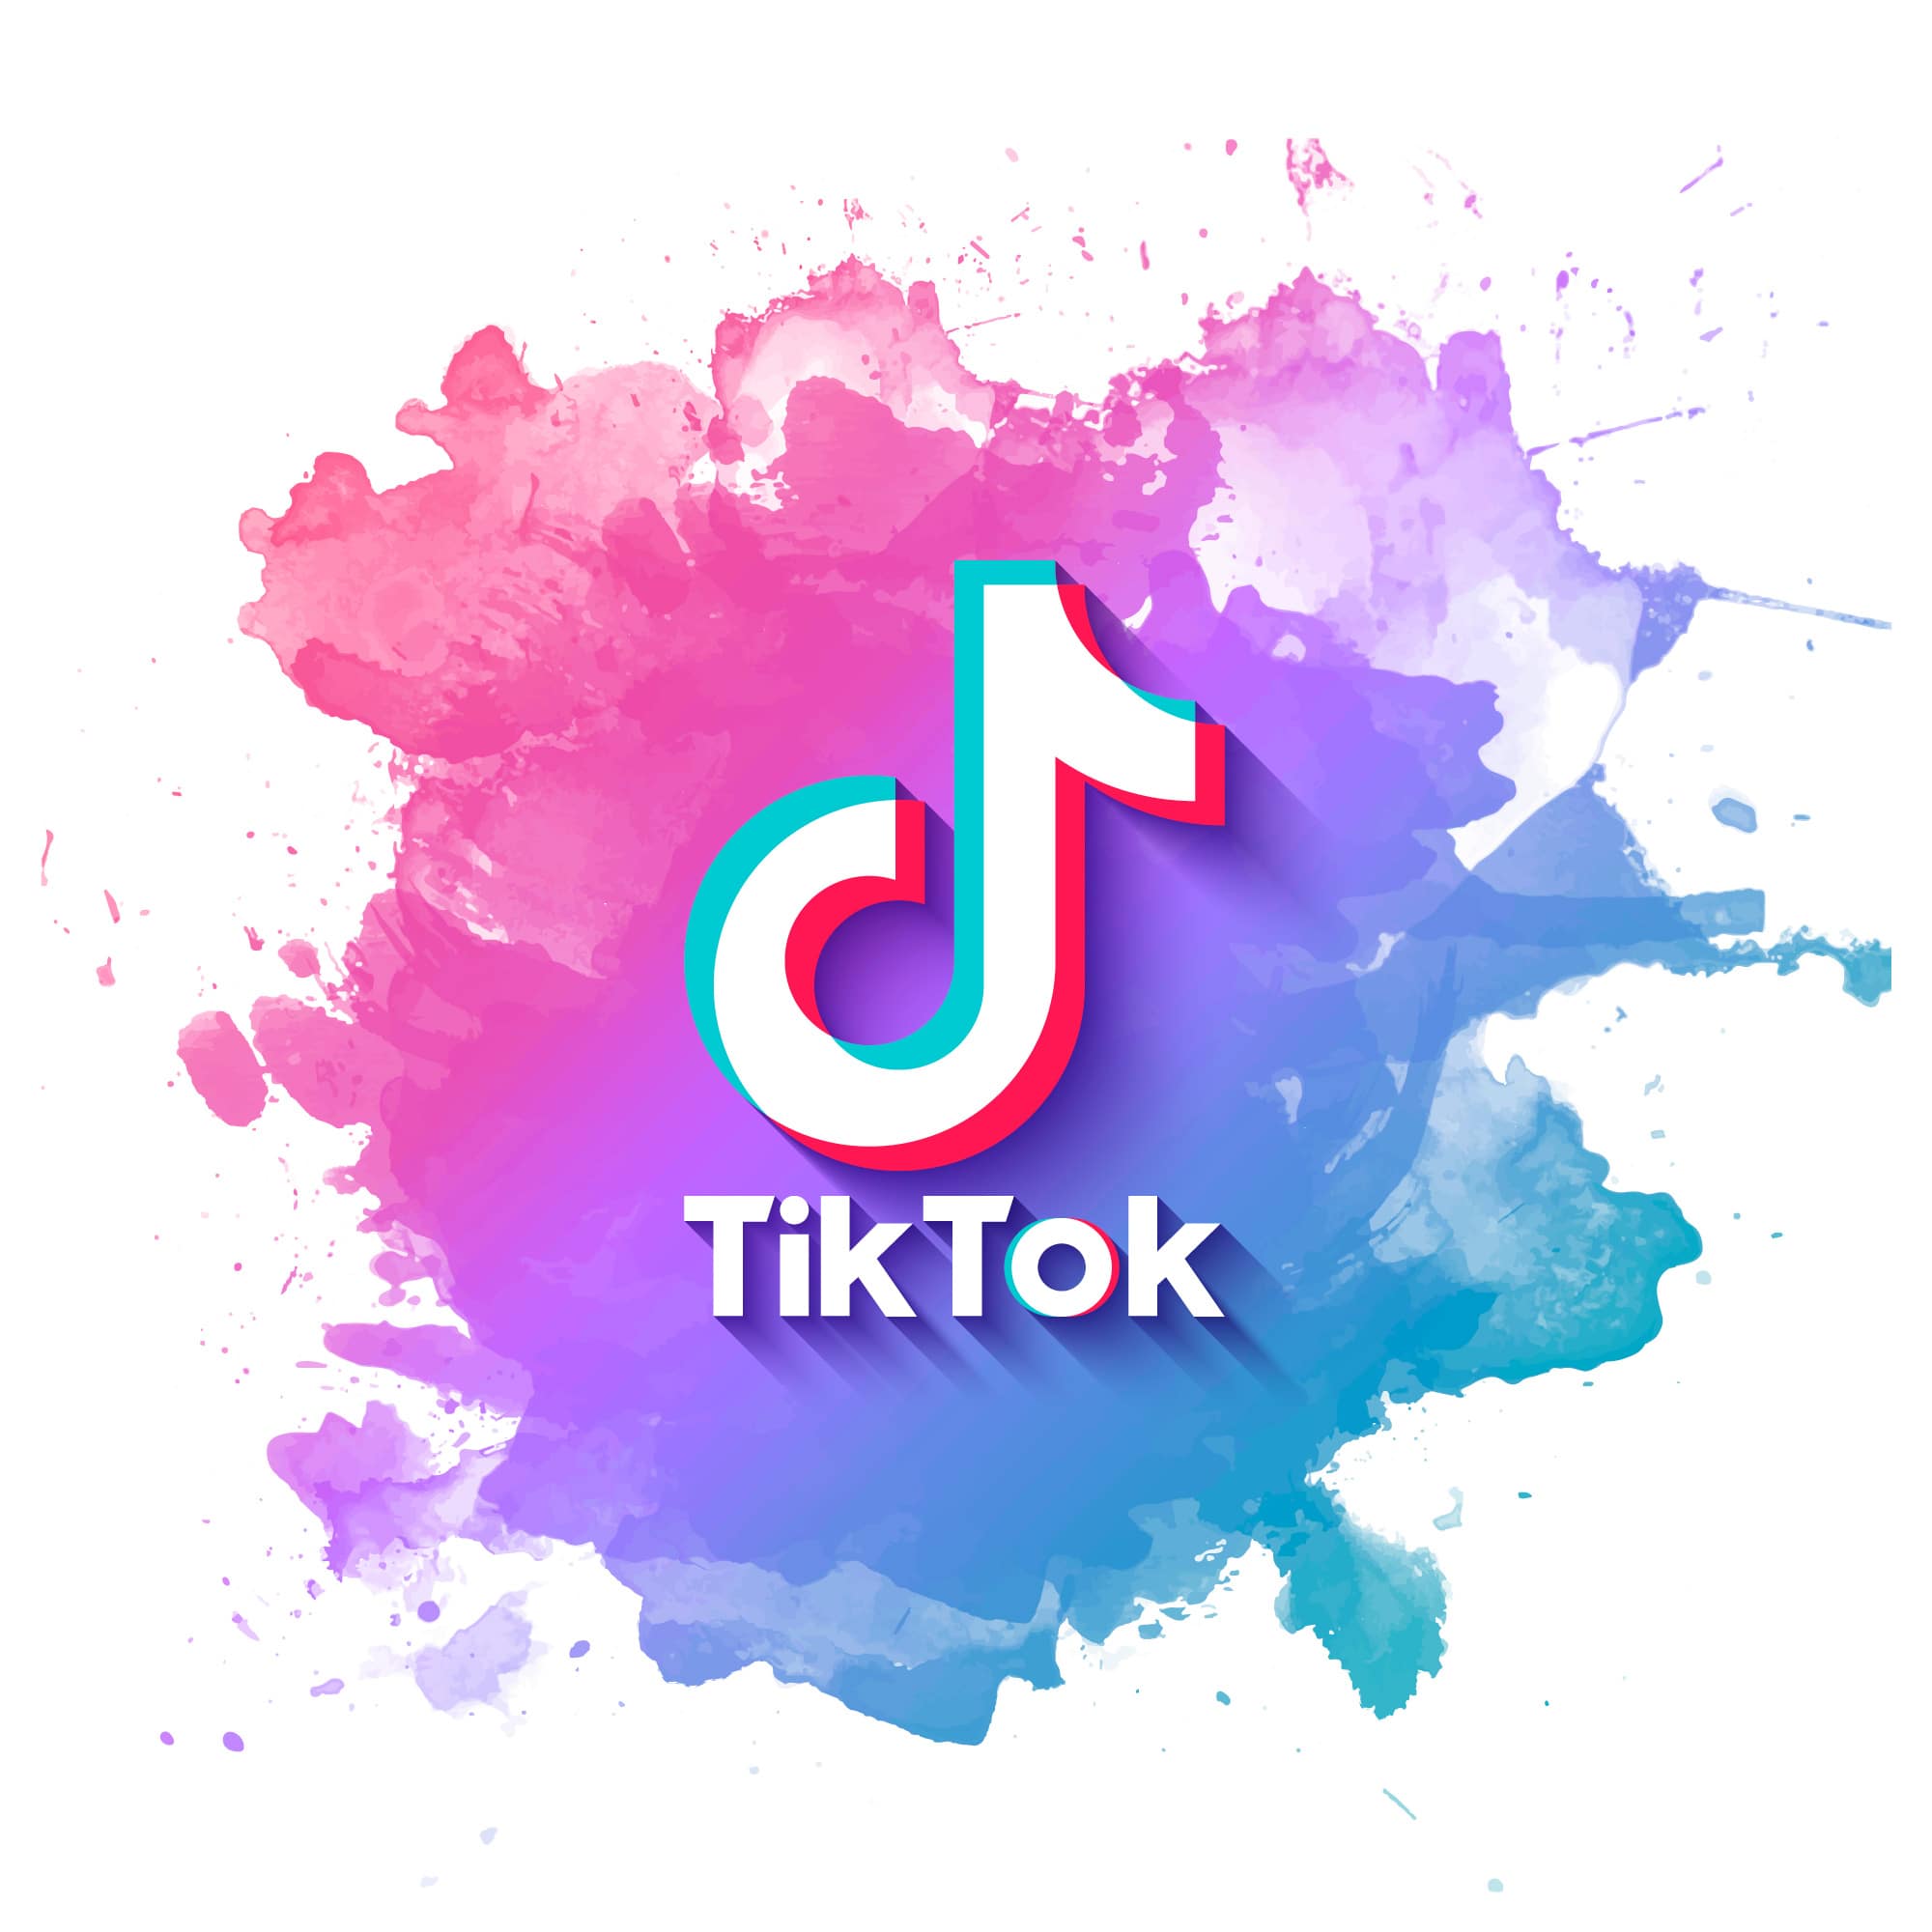 TikTok to increase brand awareness